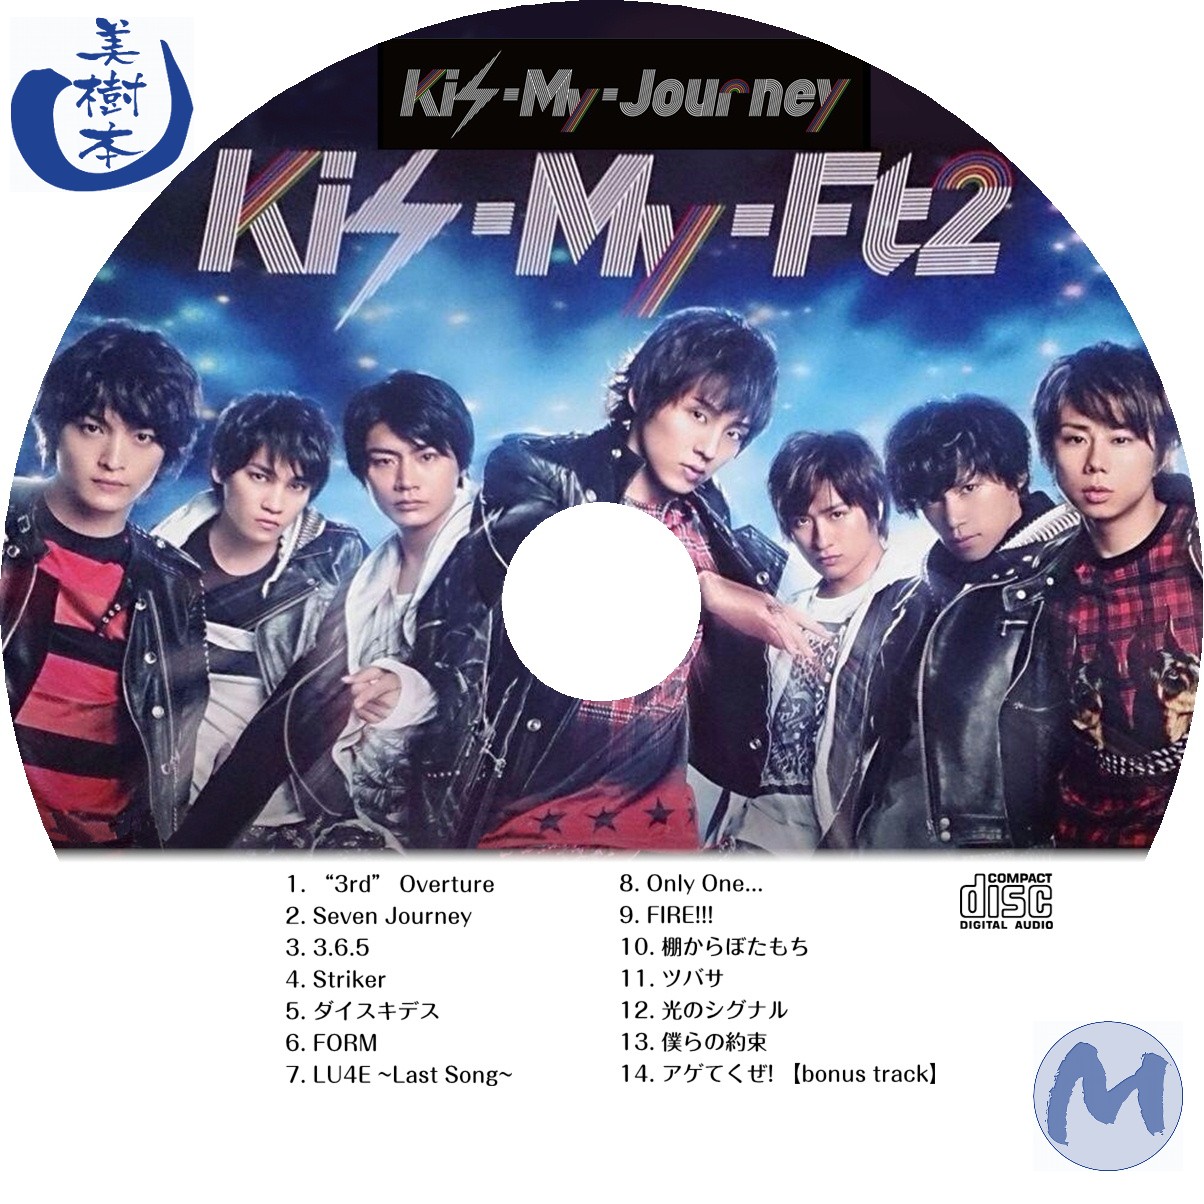 海外正規品 Kis-My-JourneyのCD、DVD、ブルーレイ4点セット Kis-My-Ft2 